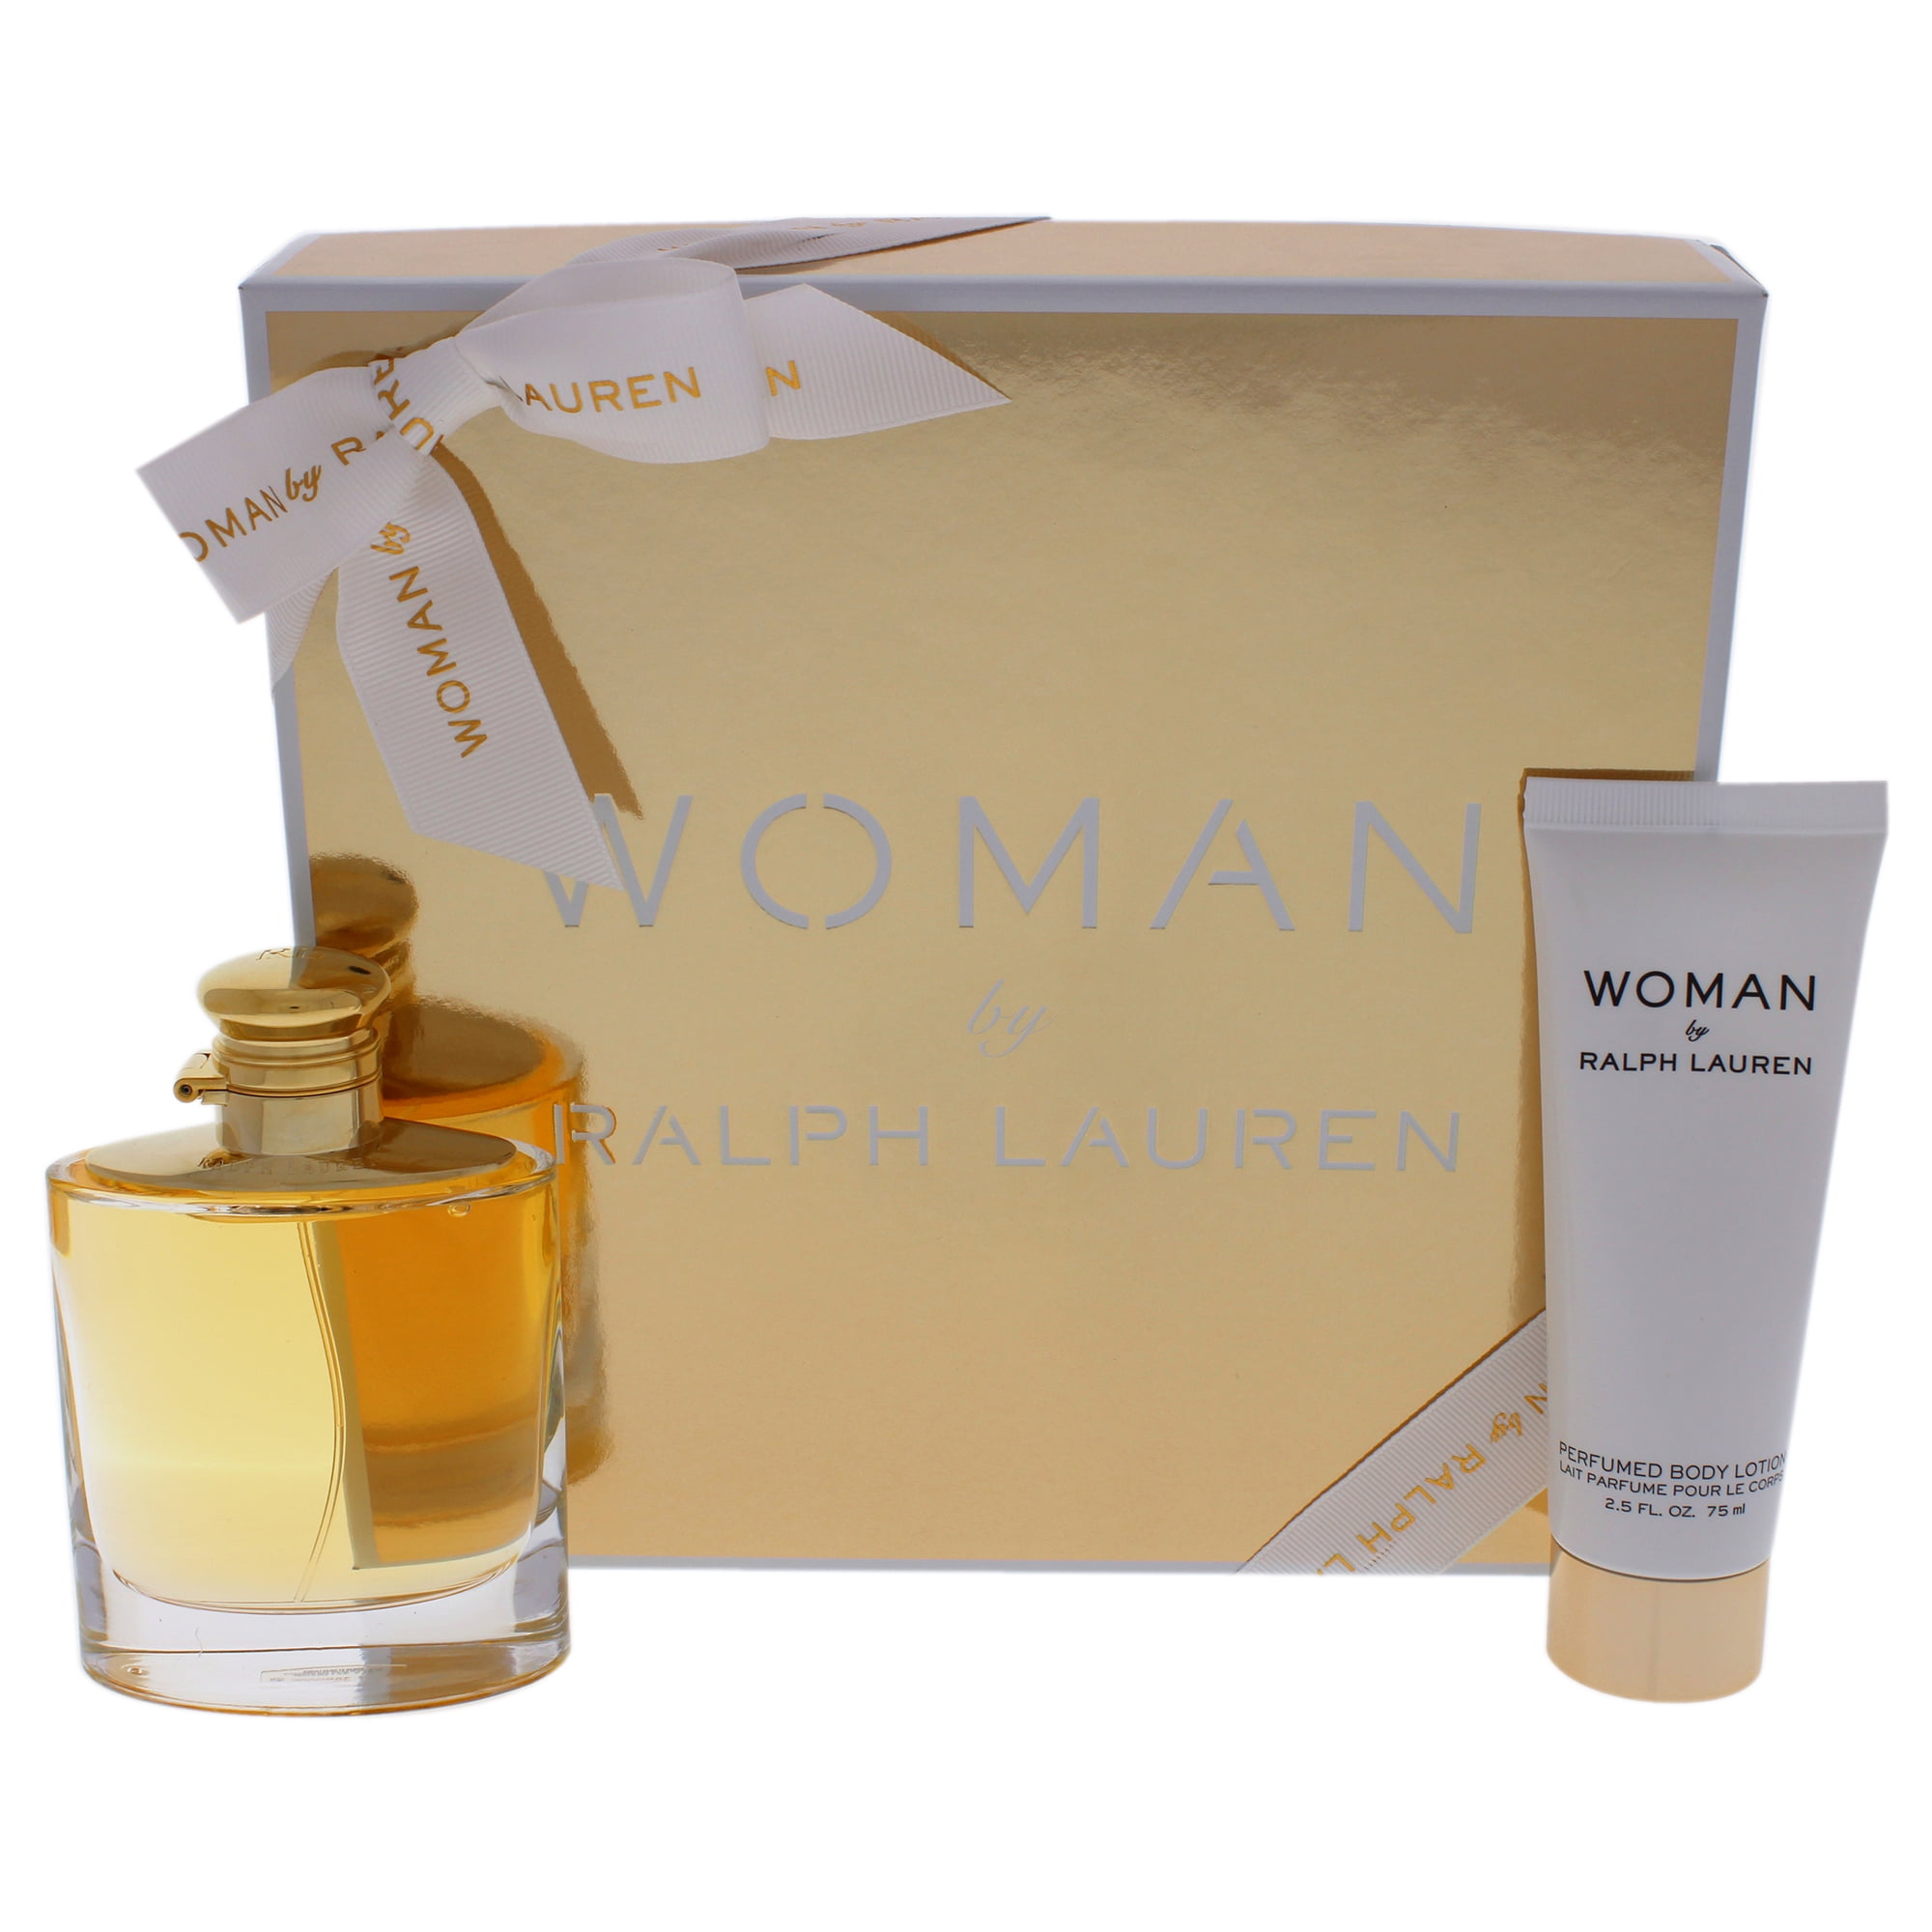 ralph lauren women's perfume gift set